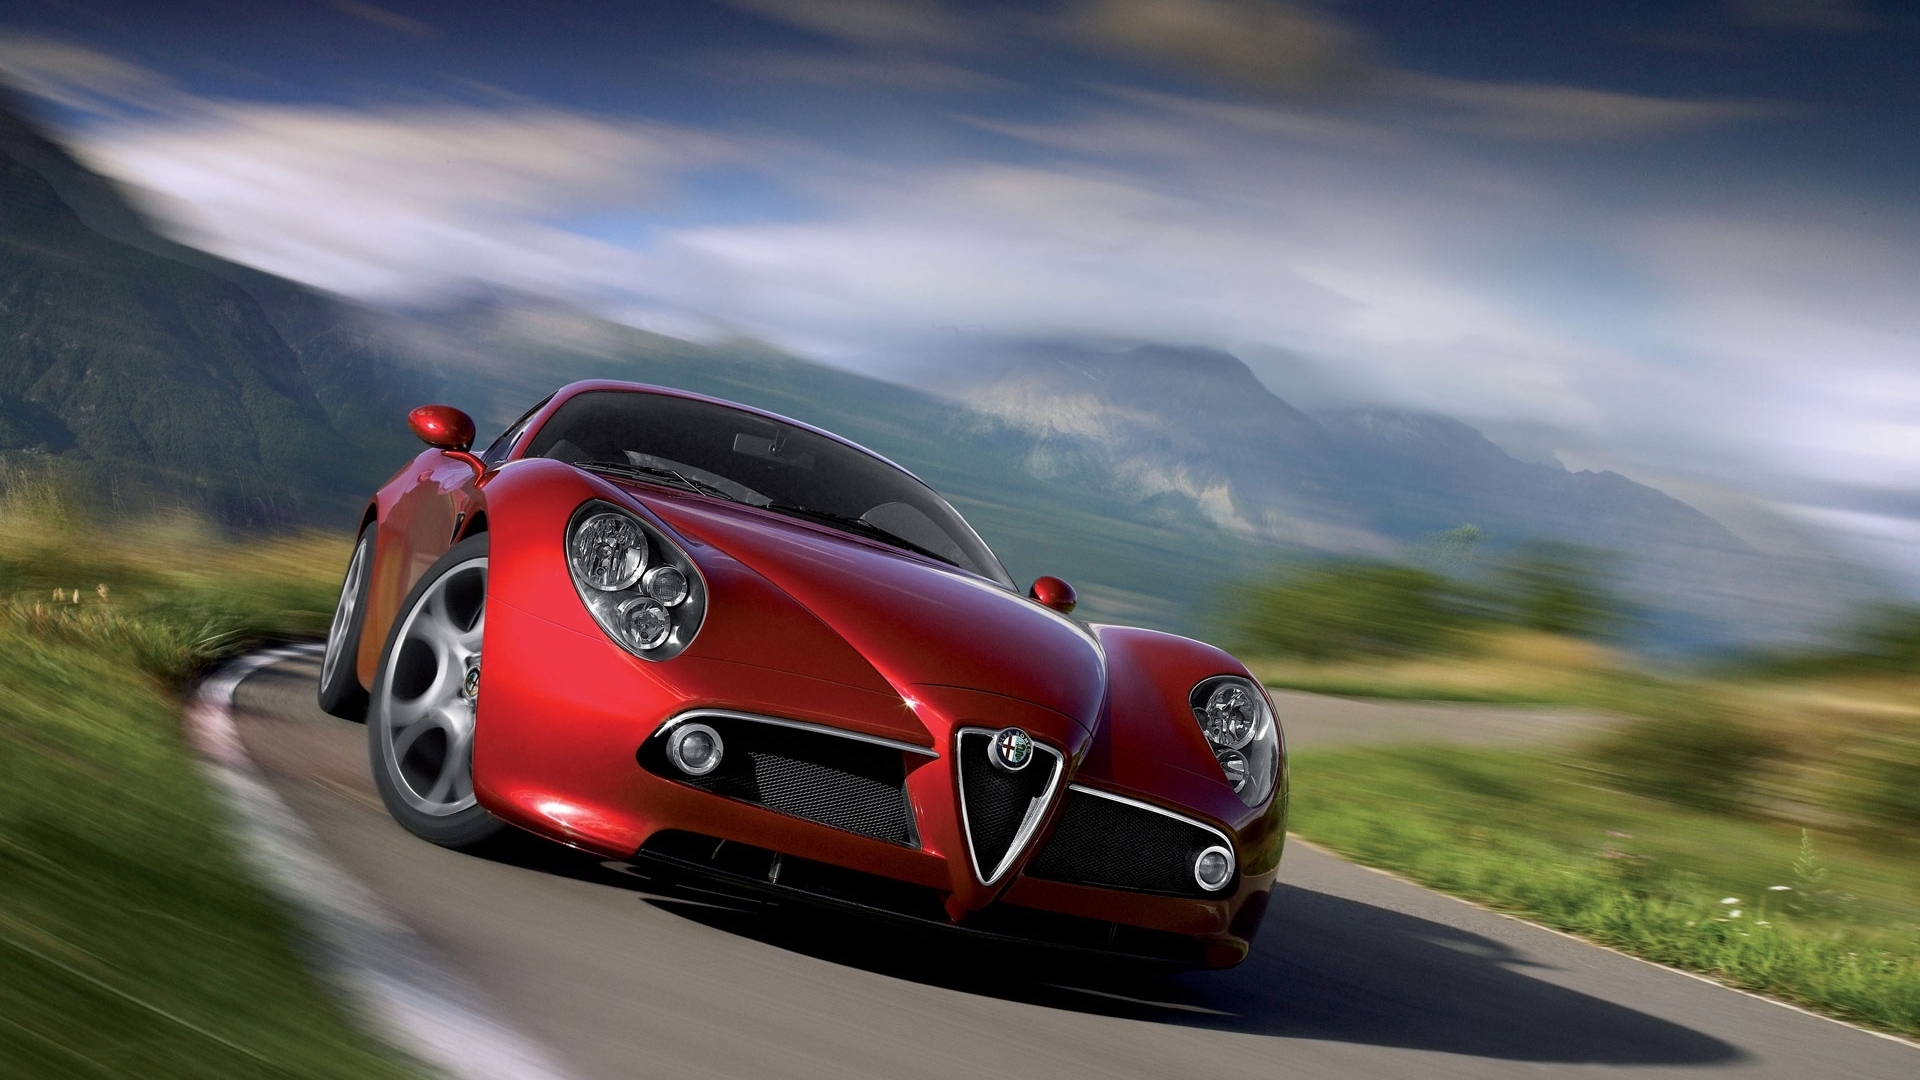 Скачать обои бесплатно Транспорт, Альфа Ромео (Alfa Romeo), Машины картинка на рабочий стол ПК